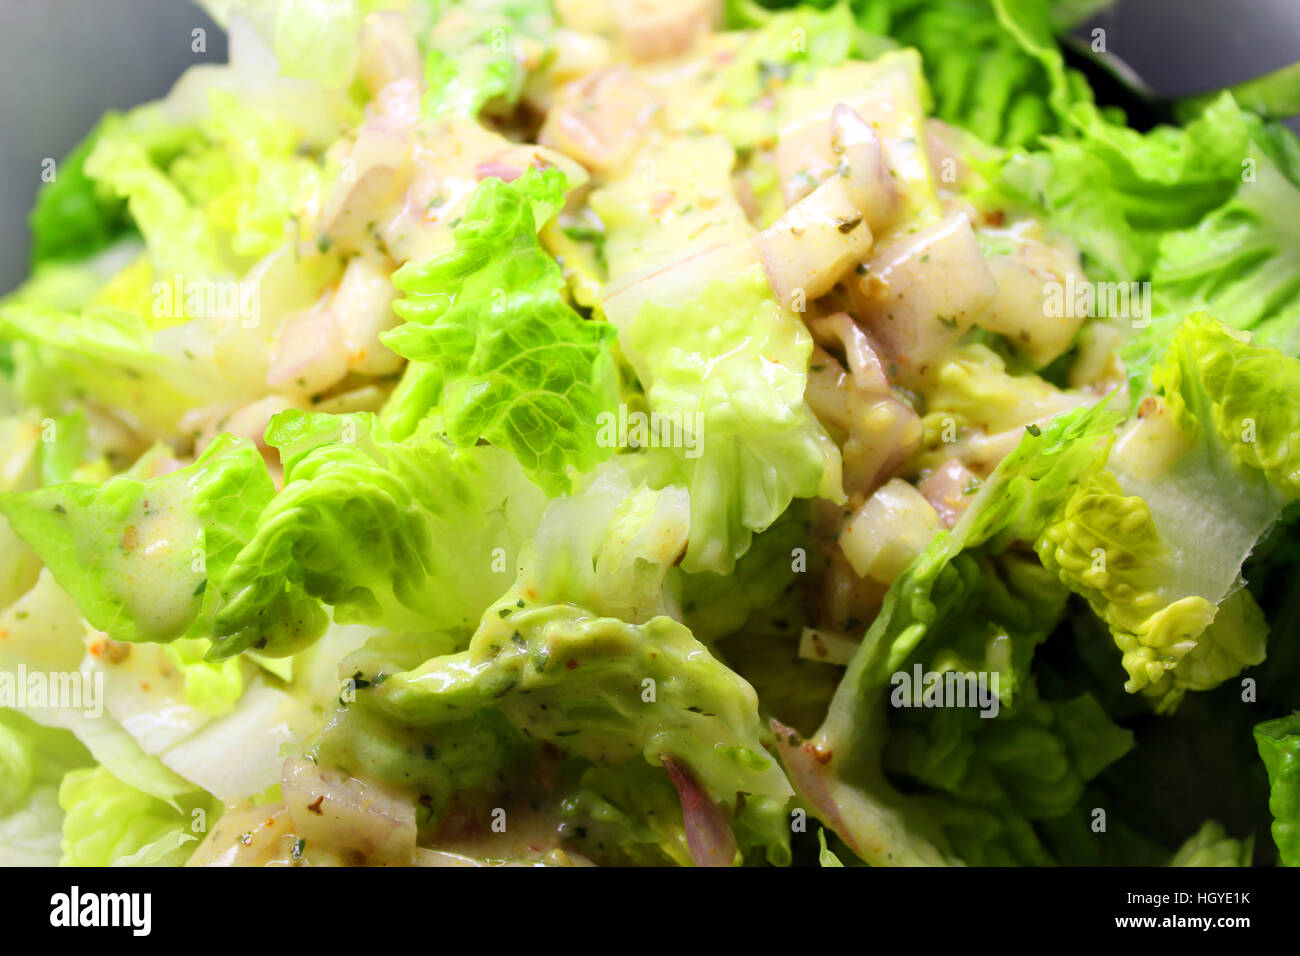 Salad closeup Stock Photo